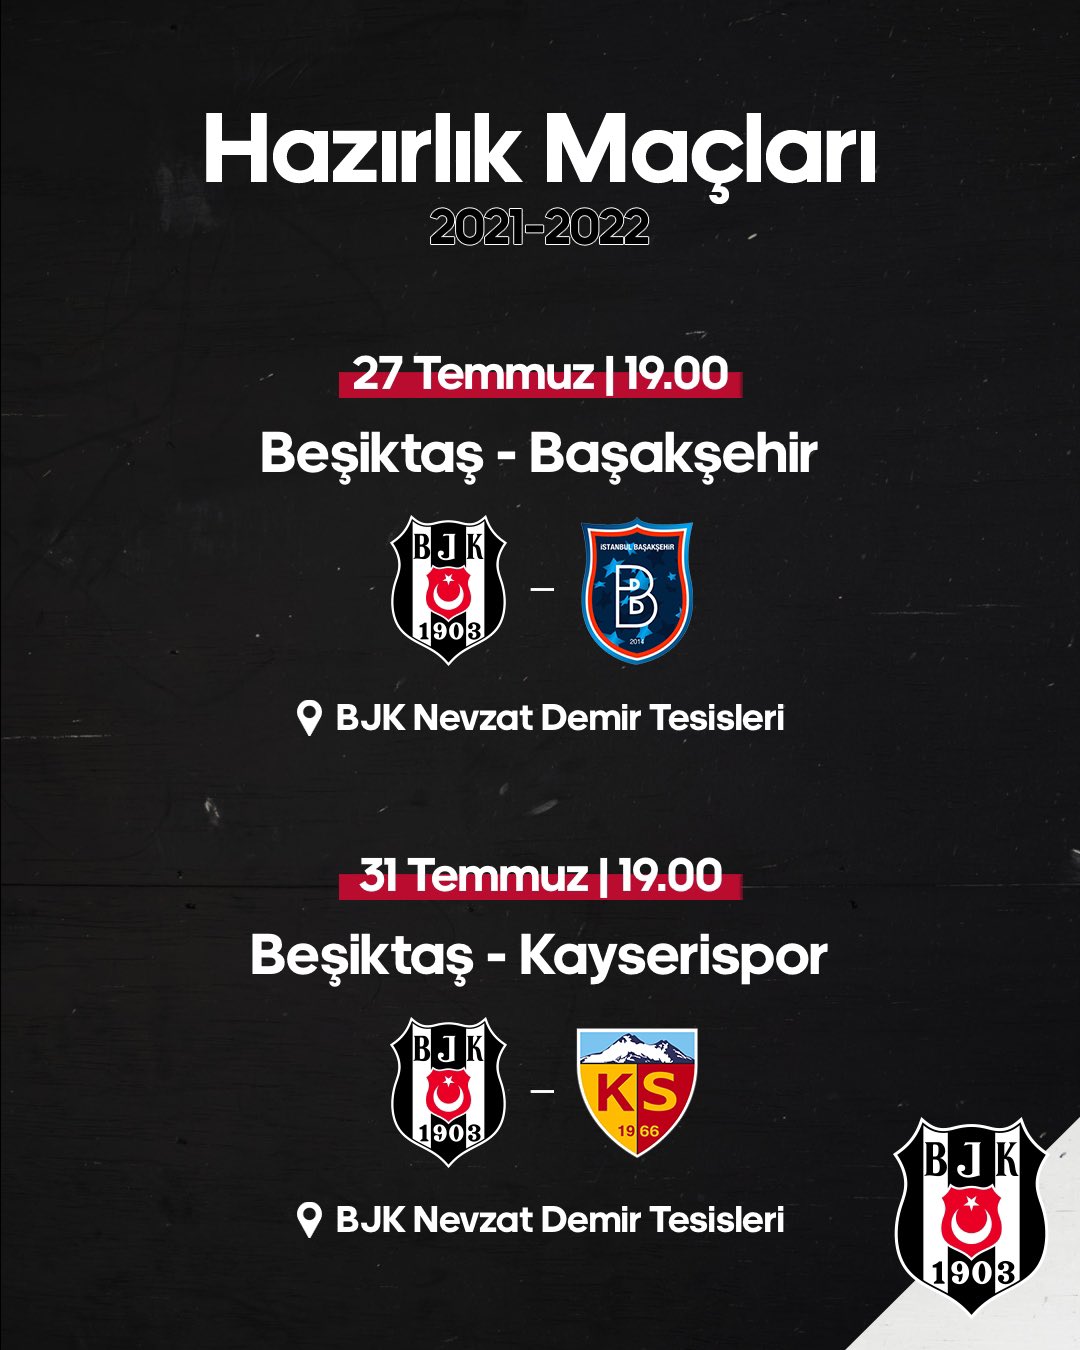 Beşiktaş JK on X: 📢 Bugün #BeşiktaşınMaçıVar 🏆 Hazırlık Maçı